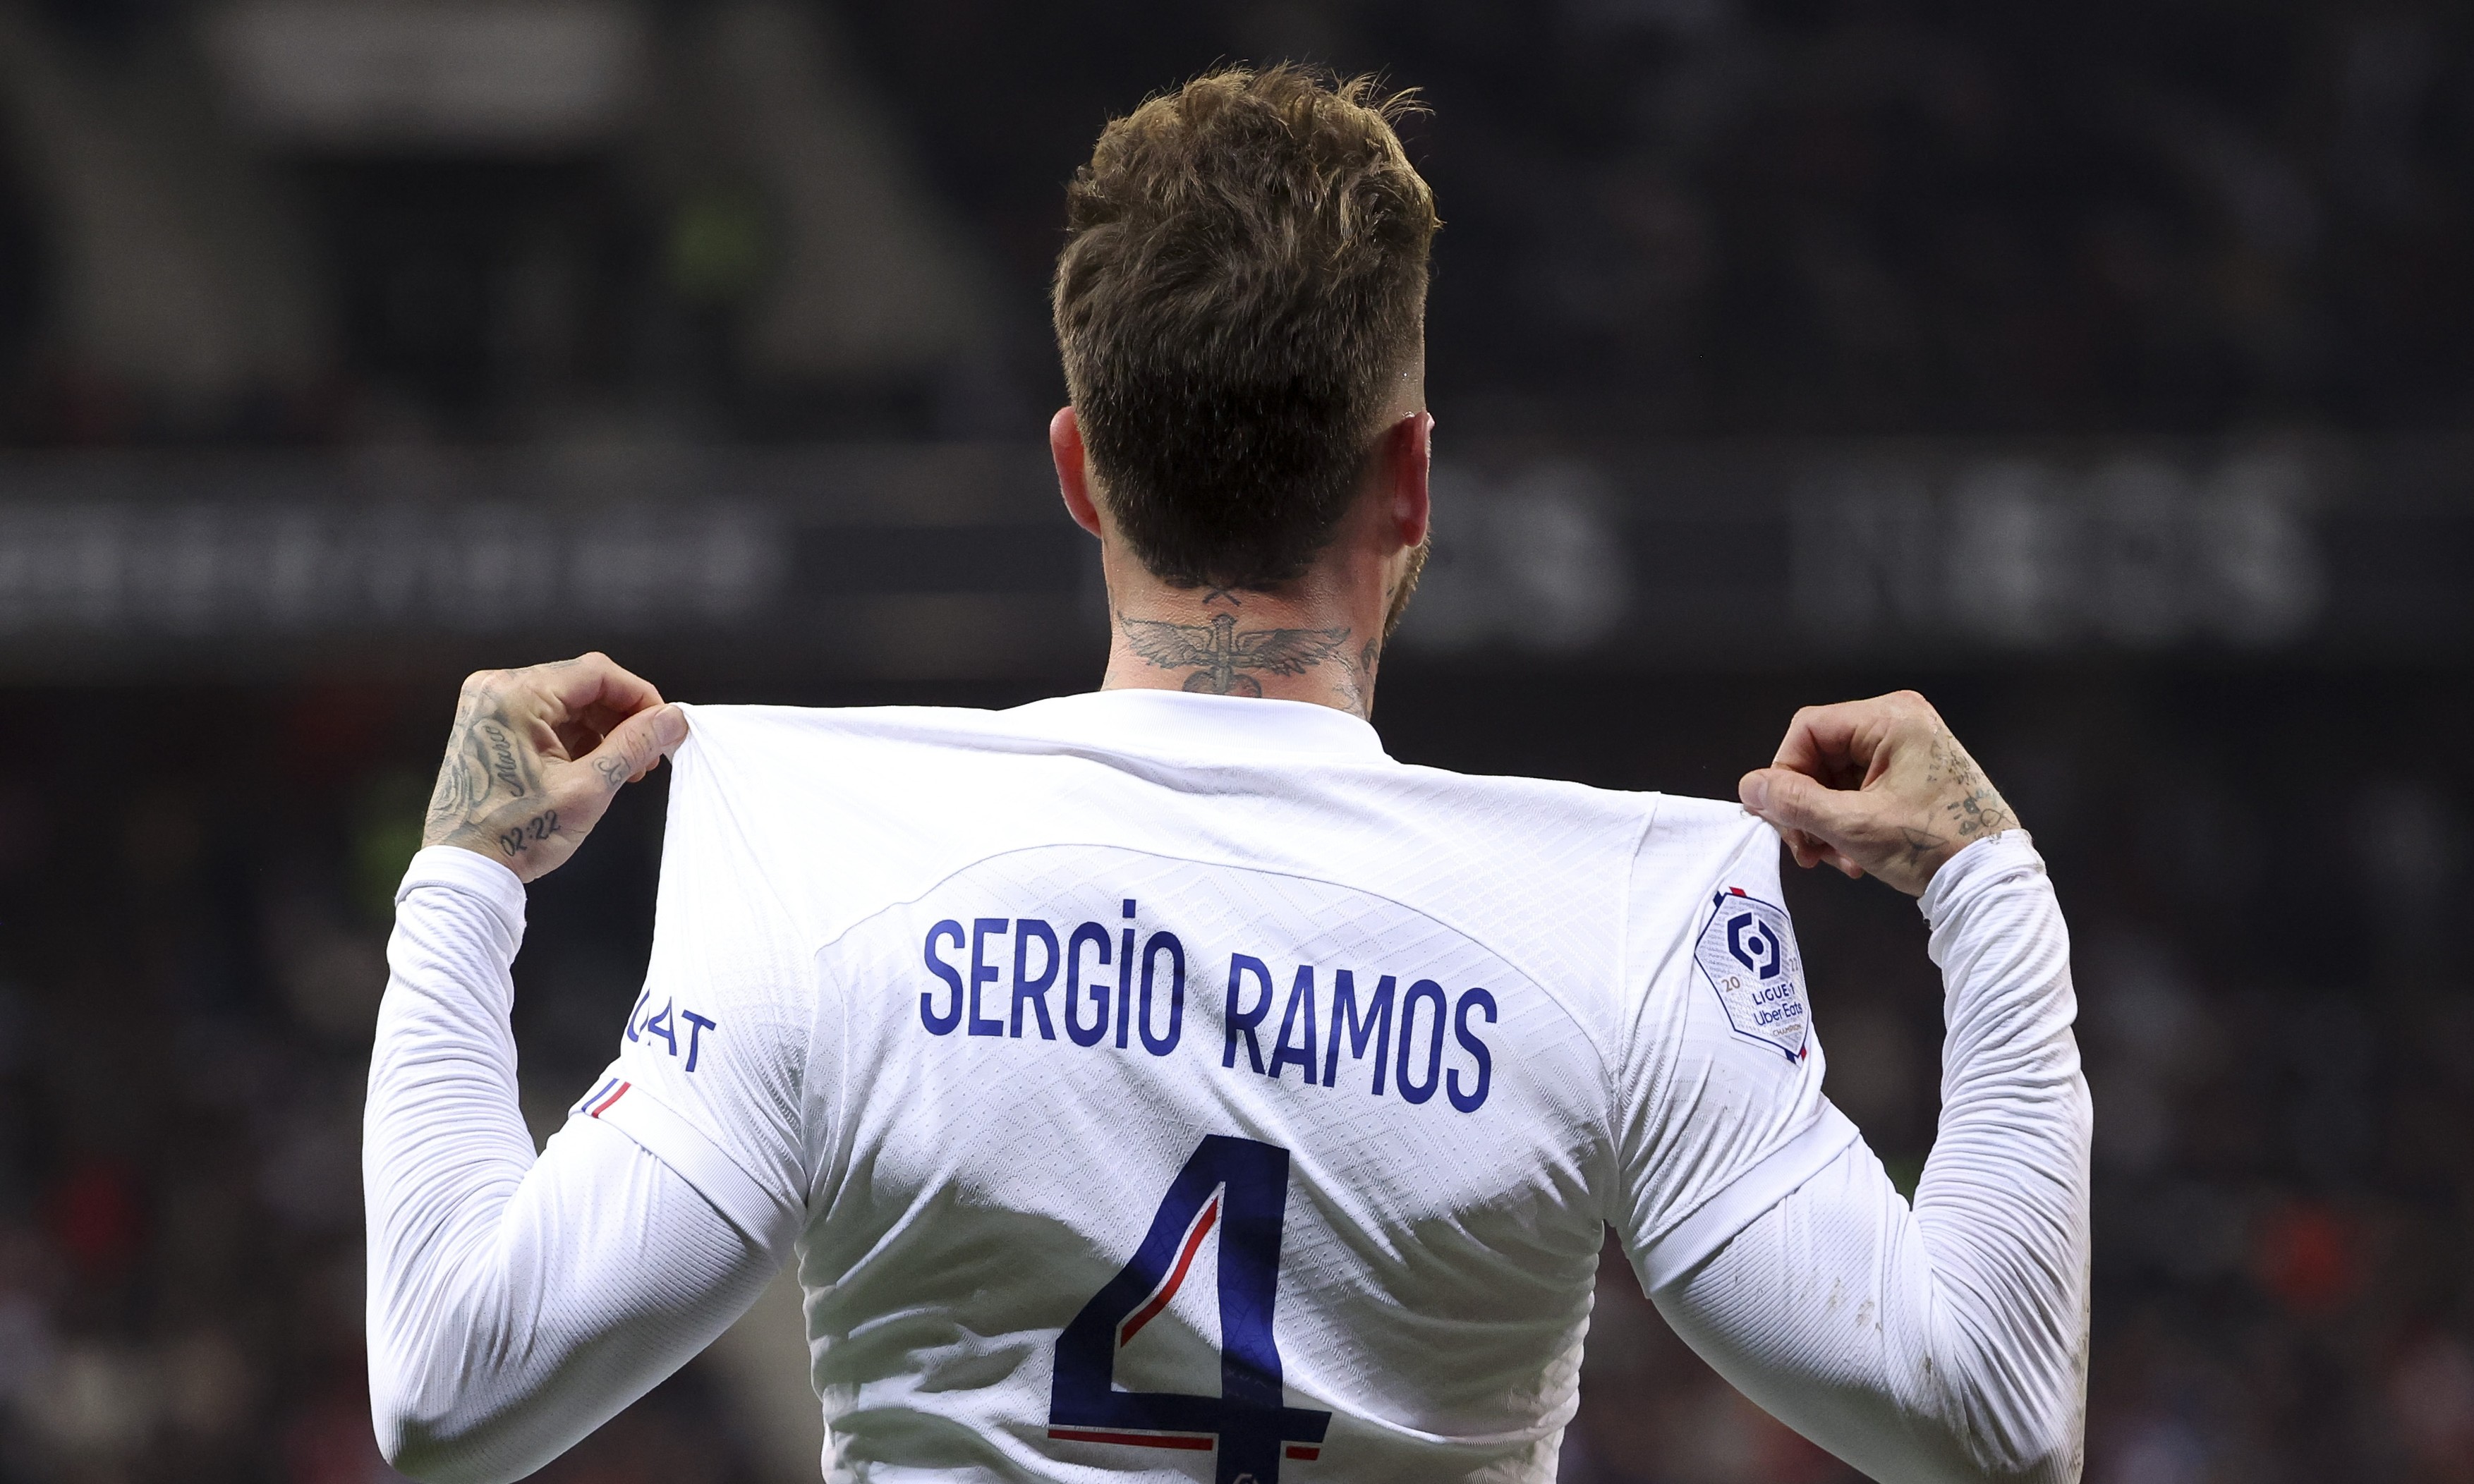 Luptă în trei pentru transferul lui Sergio Ramos! De unde are oferte fostul fundaș de la Real Madrid și PSG